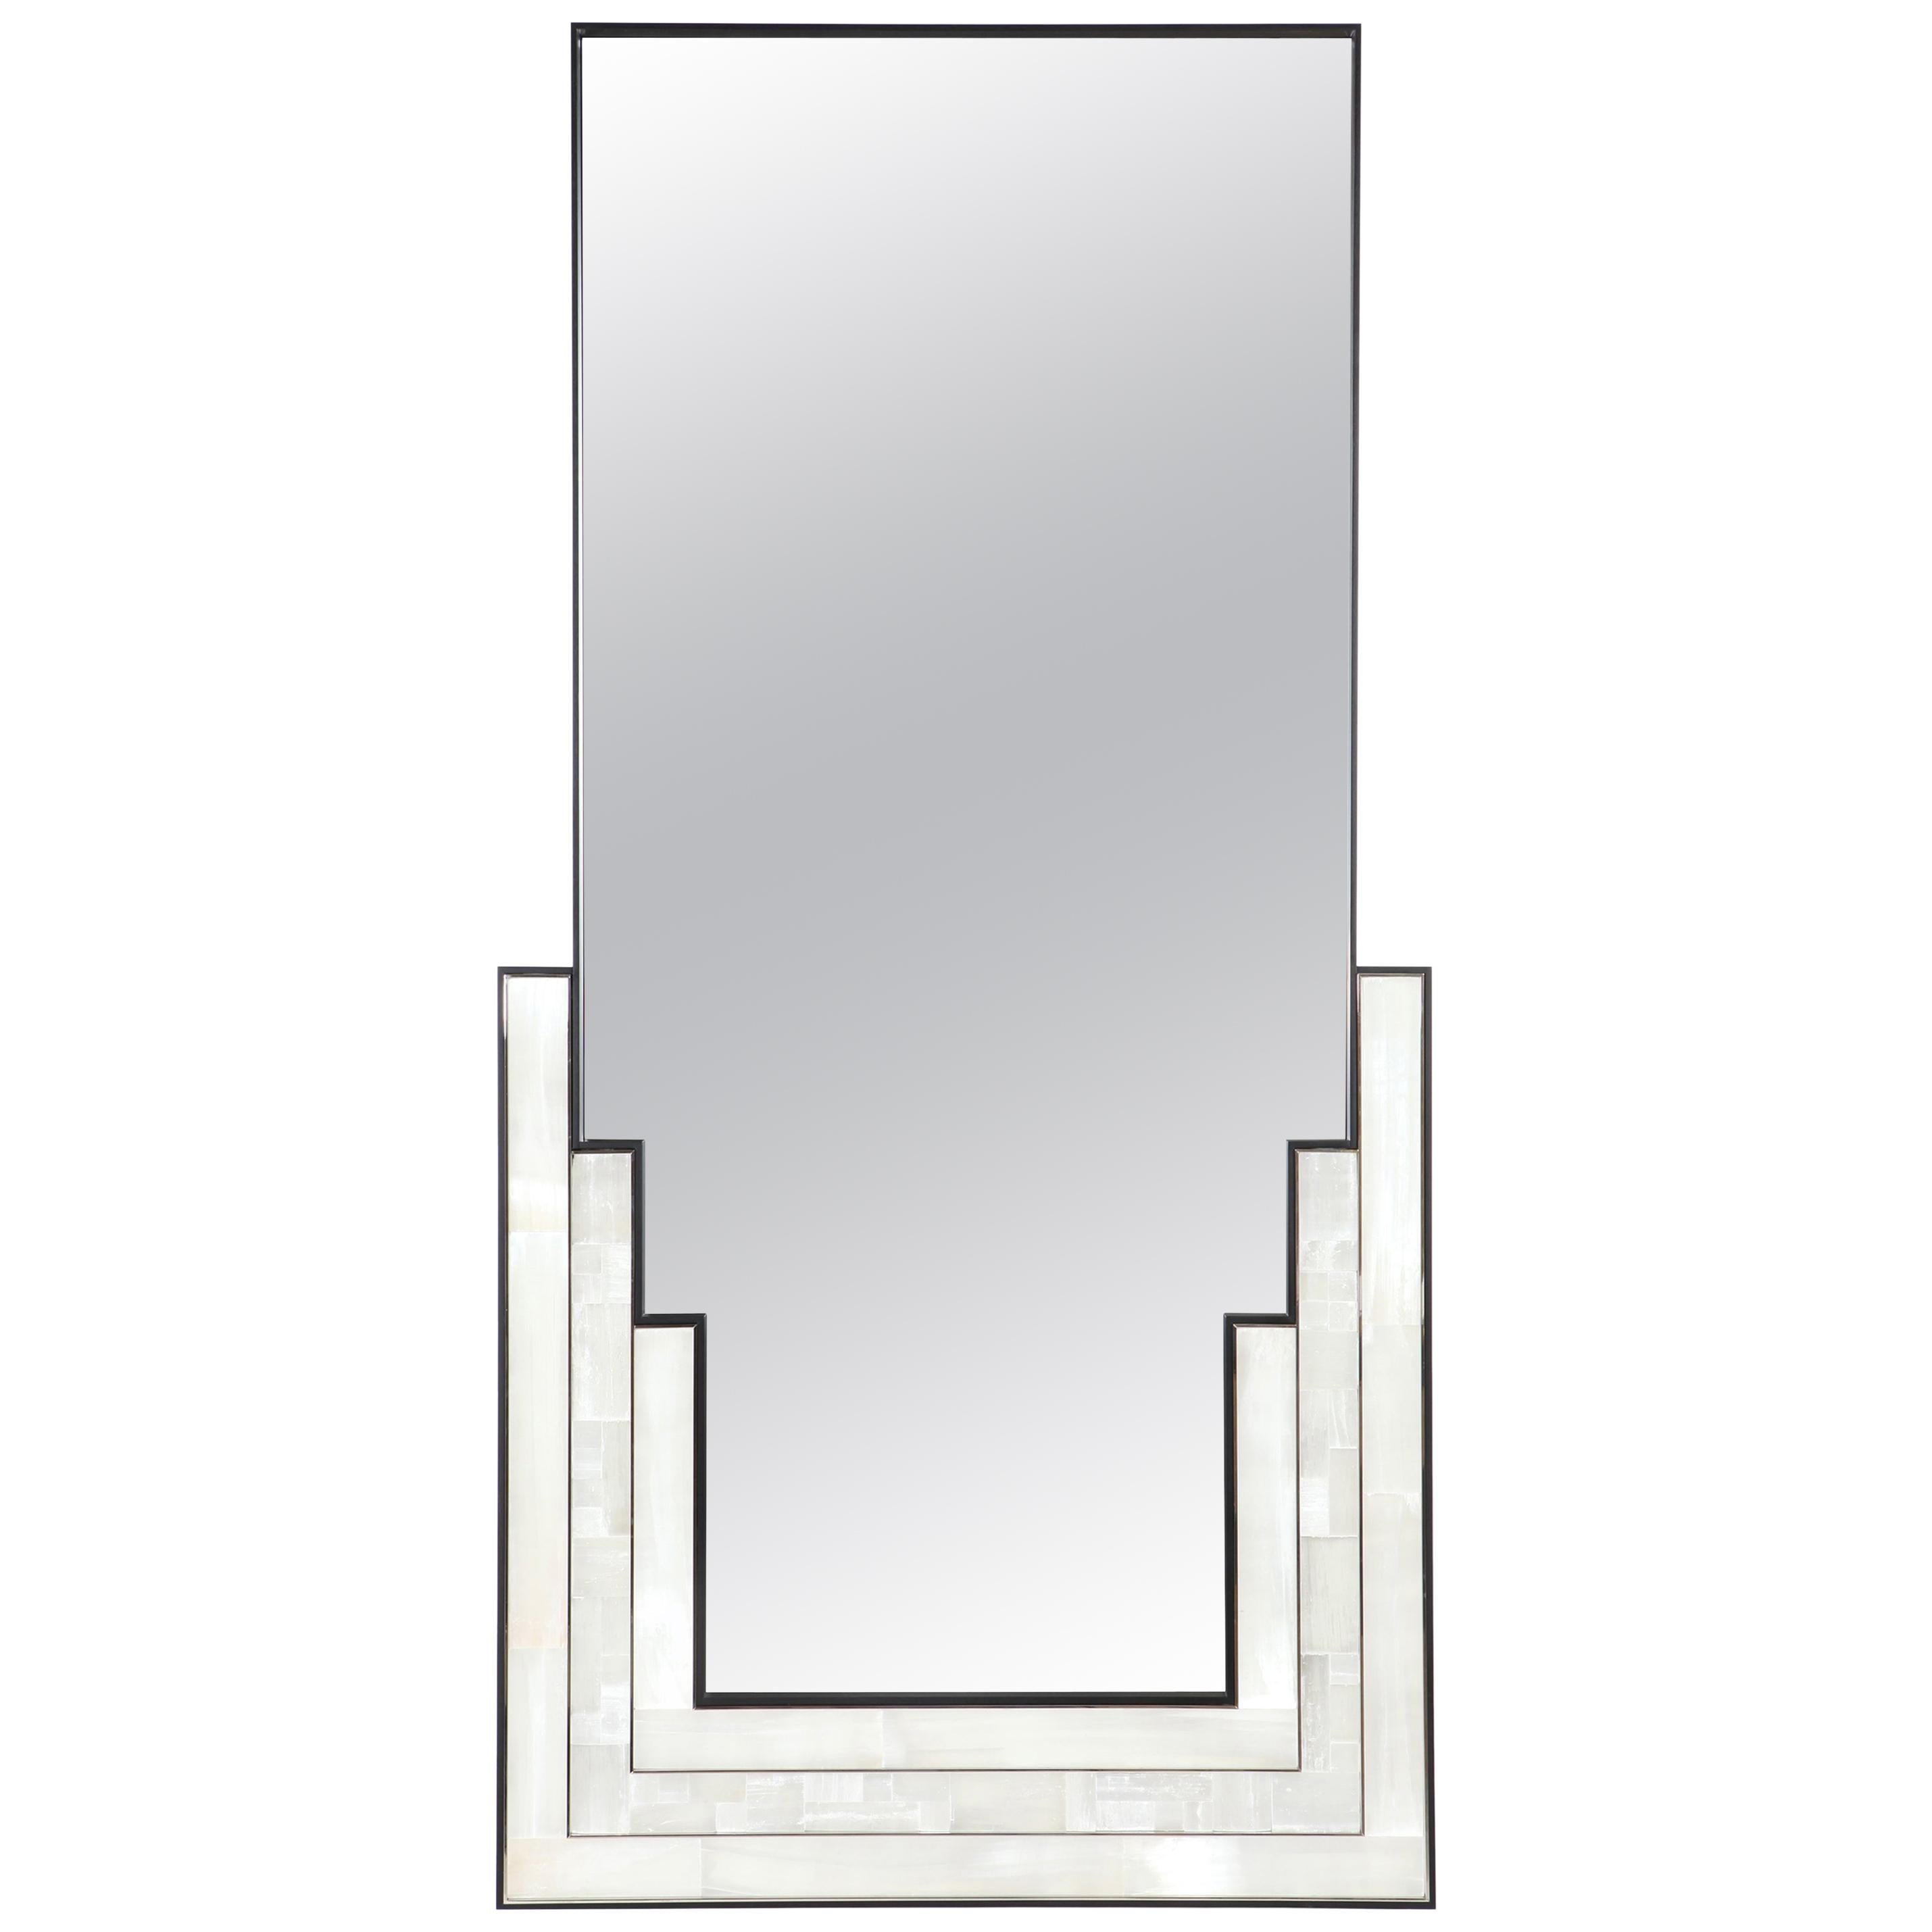 Escalier Mirror with selenite, Wooden Veneer and Nickel Detailing